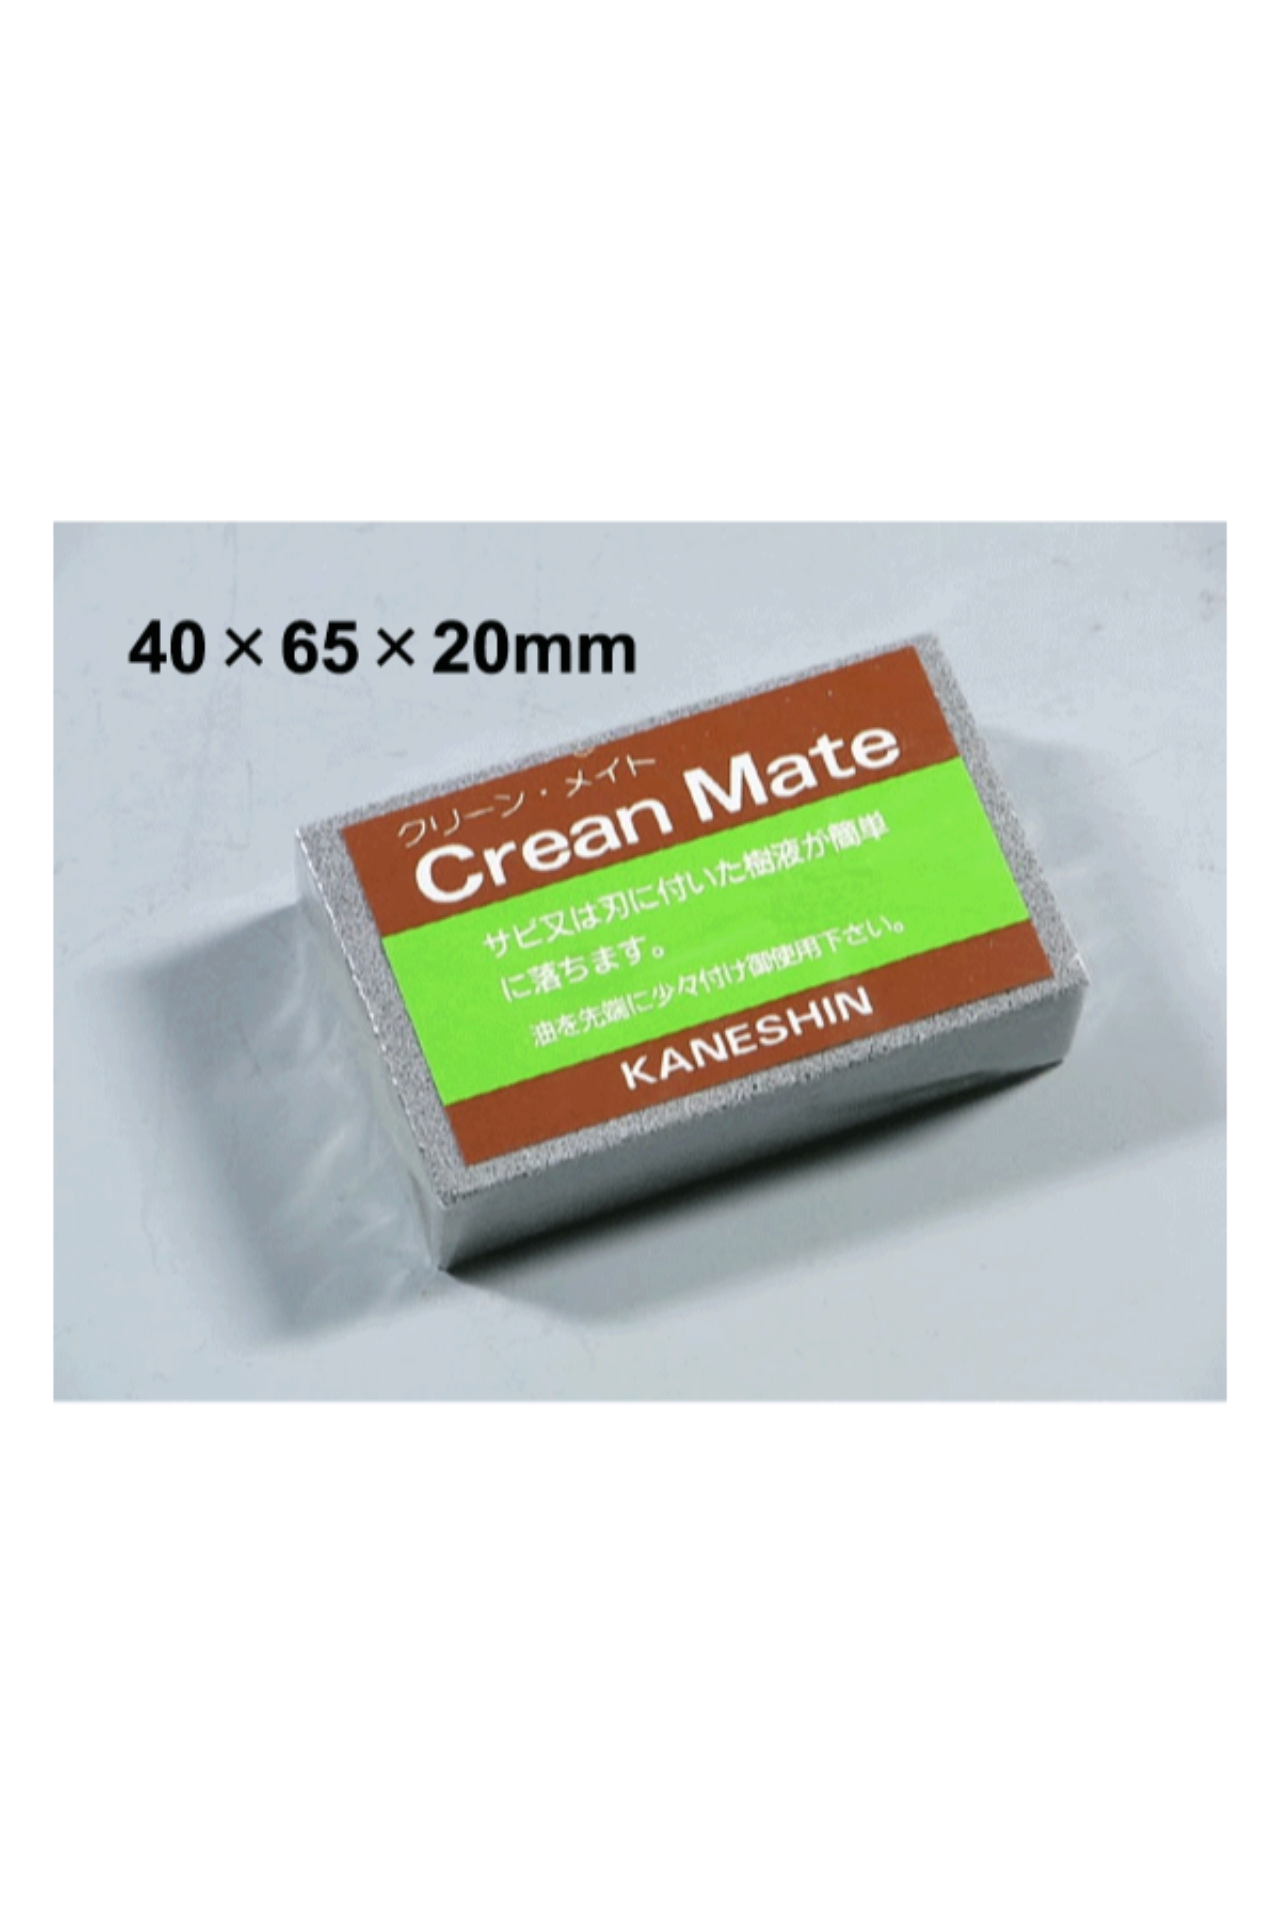 Immagine di Gomma pulizia utensili Crean Mate 180 g giapponese